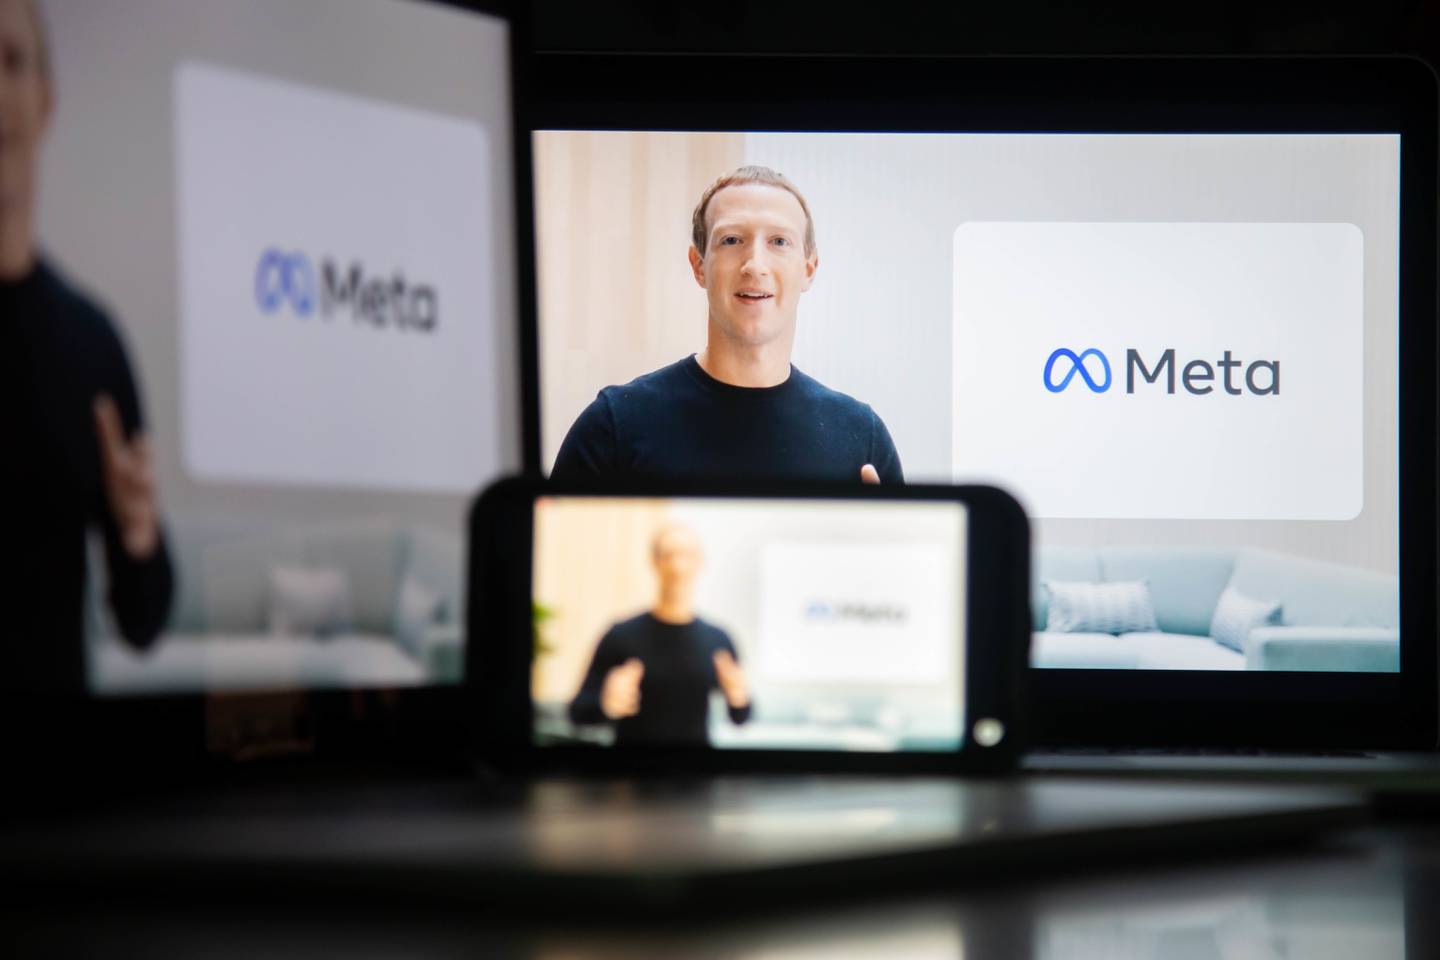 Mark Zuckerberg, CEO de Facebook Inc., habla durante el evento virtual Facebook Connect, en el que la empresa anunció su cambio de marca a Meta, en octubre de 2021. 

dfd